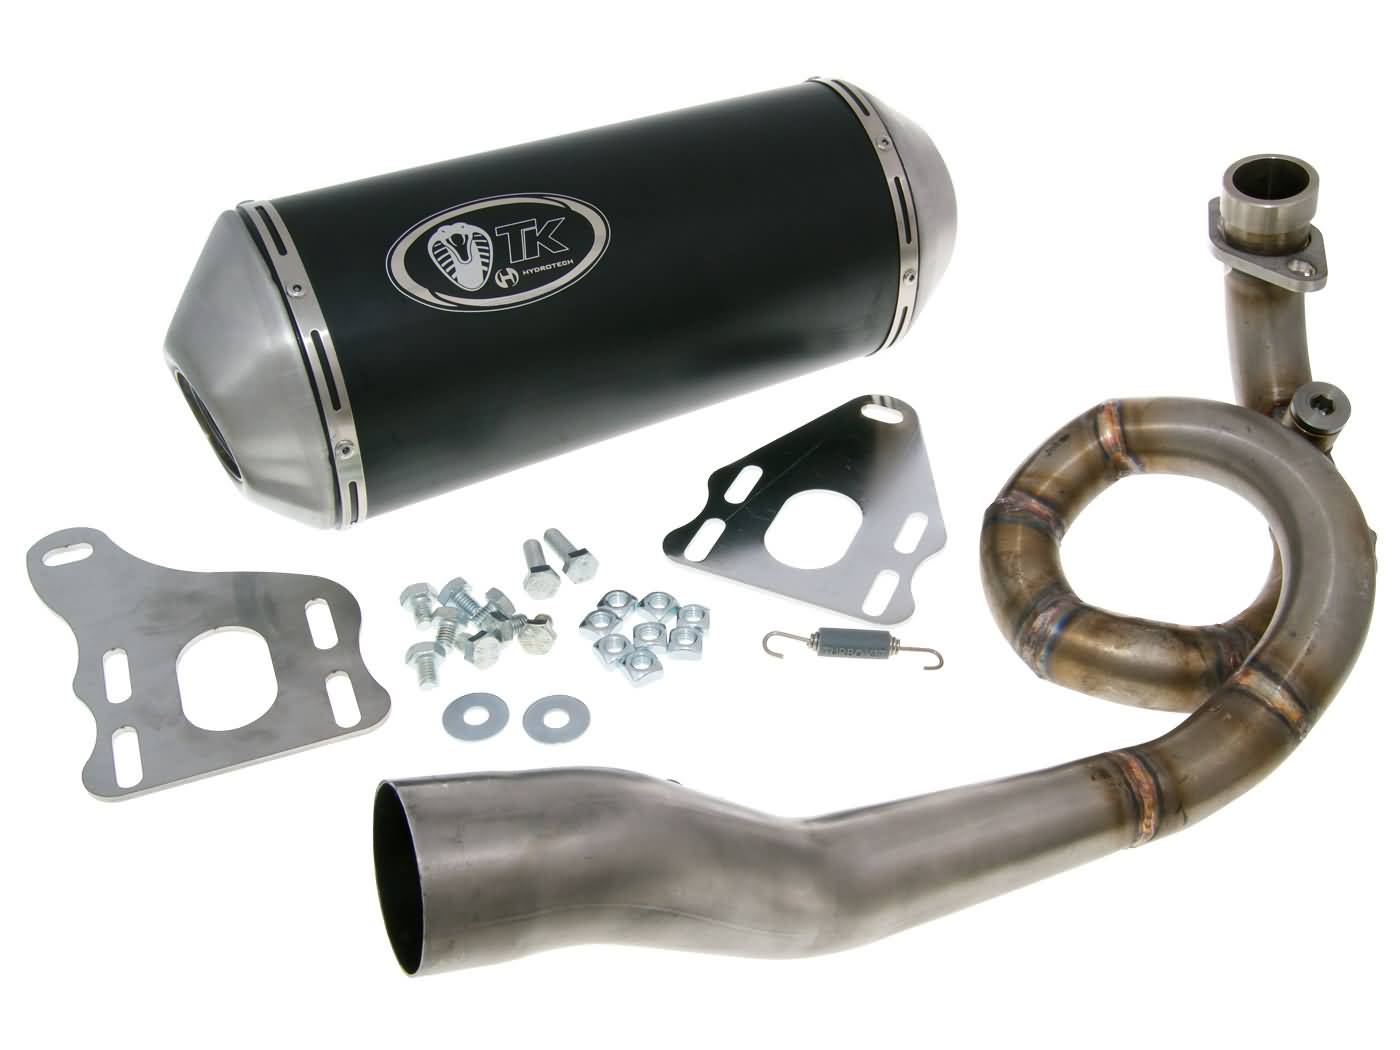 Výfuk Turbo Kit GMax 4T pro Vespa GT, GTS, LX a LXV 125 až 150ccm